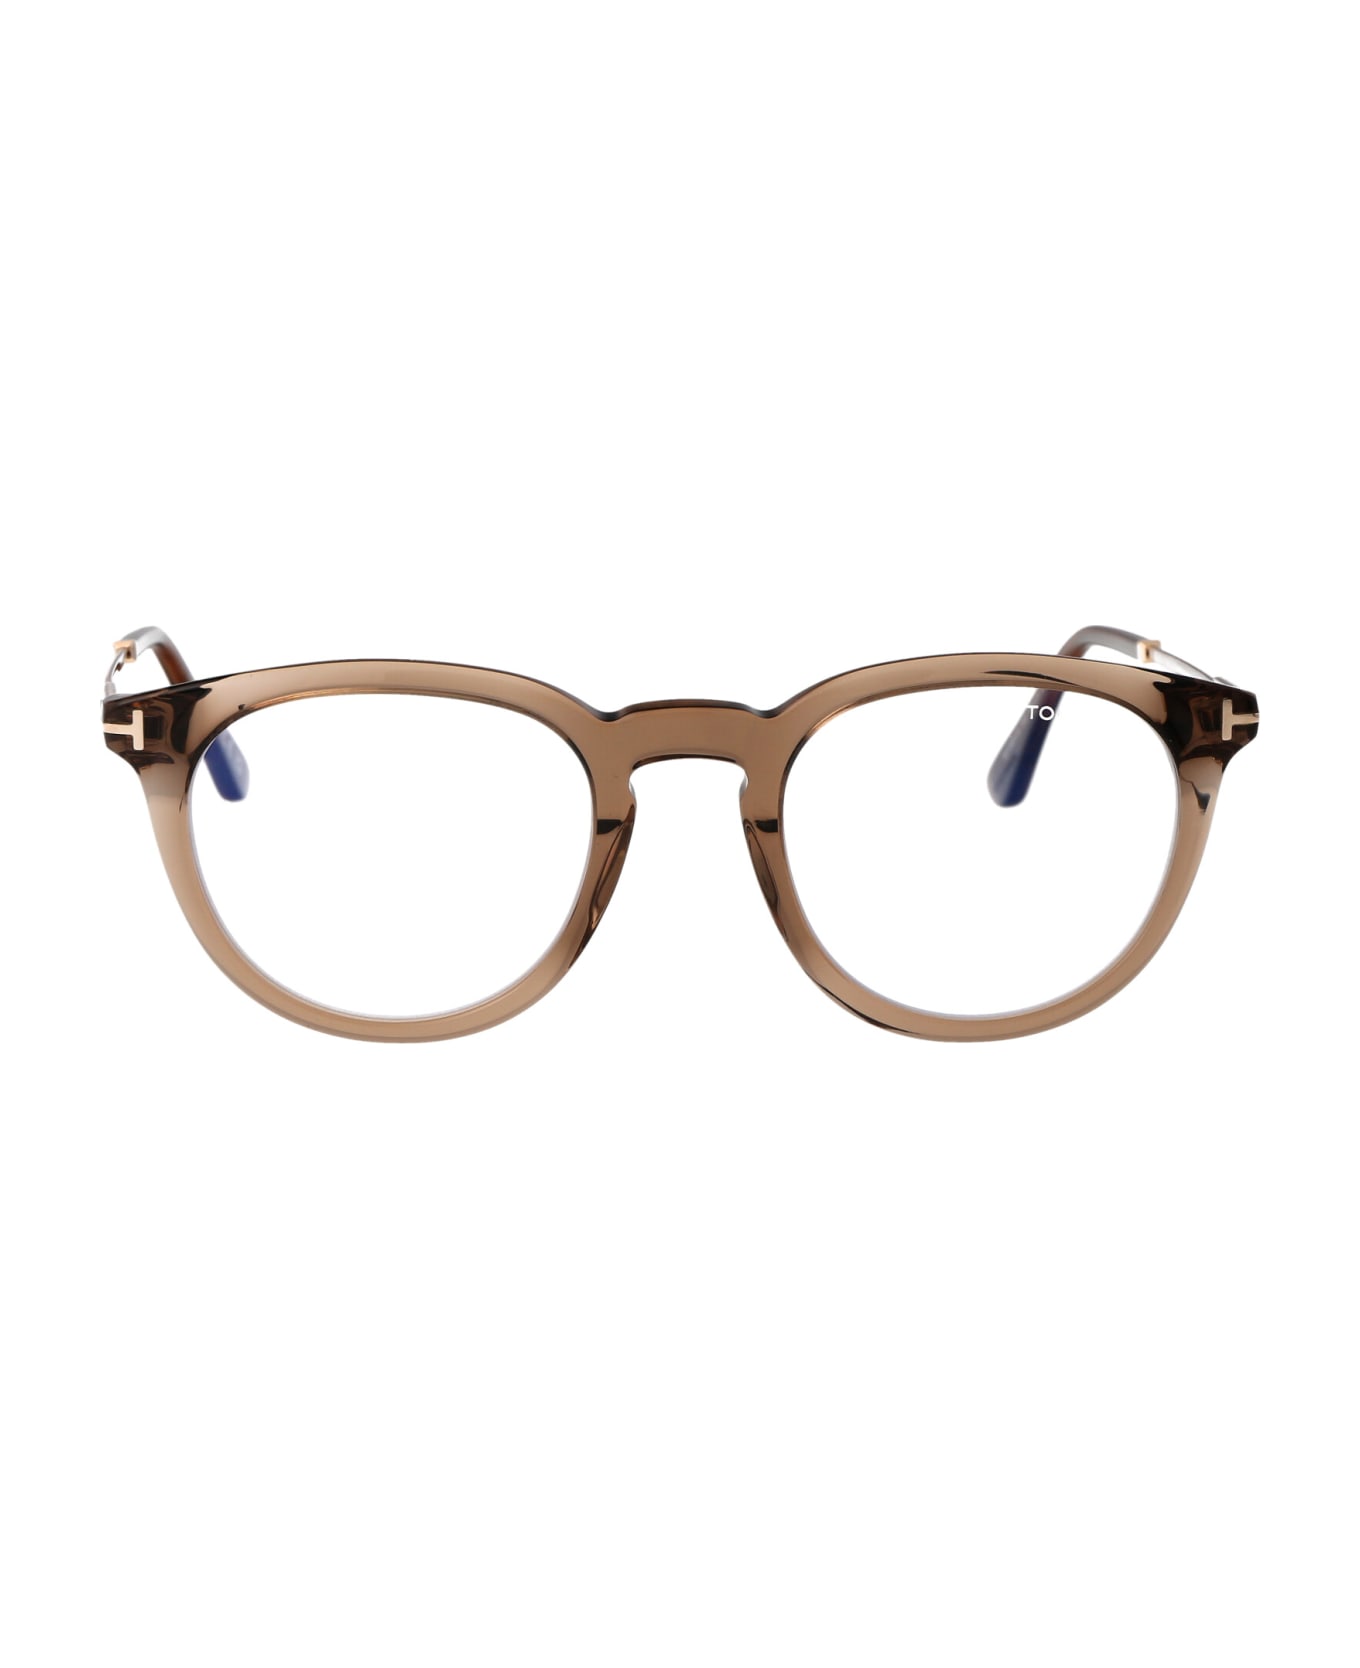 Tom Ford Eyewear Ft5905-b Glasses - 045 Marrone Chiaro Luc